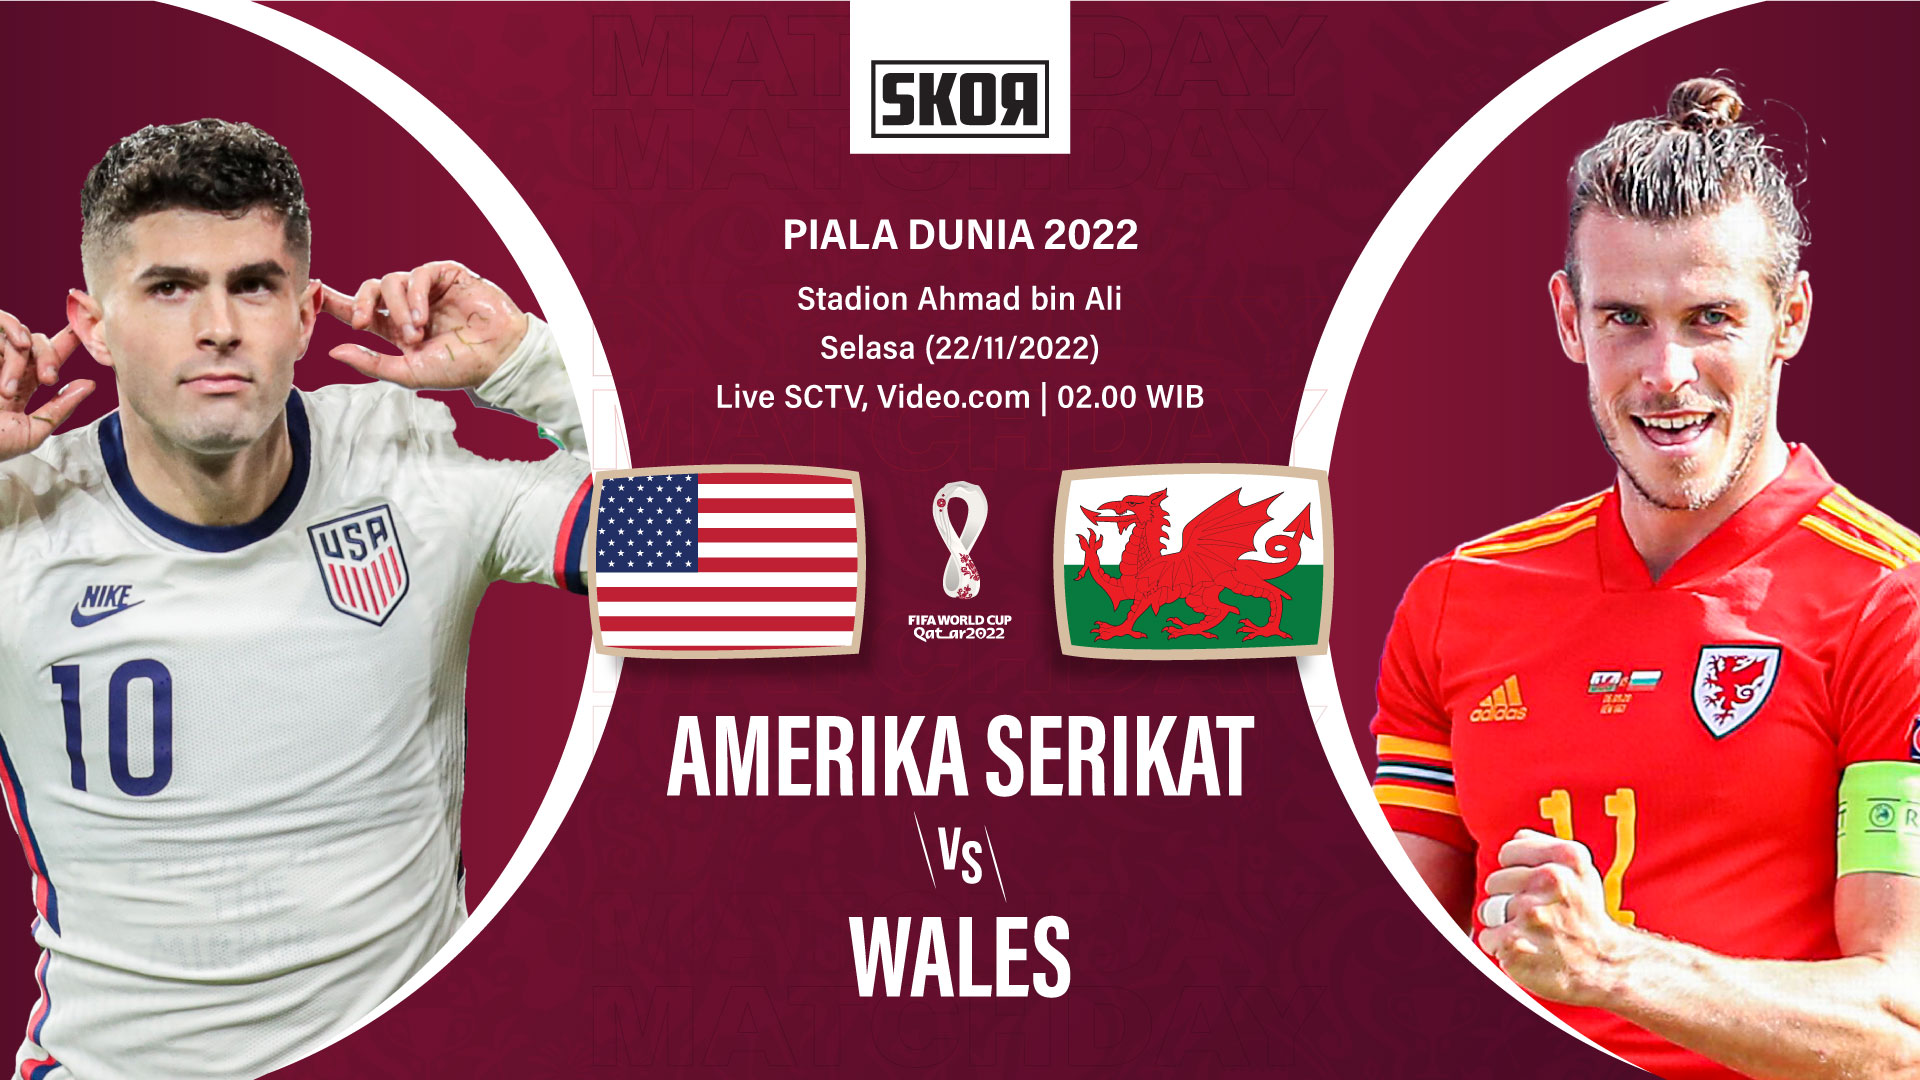 Preview dan Link Live Streaming Amerika Serikat vs Wales di Piala Dunia 2022